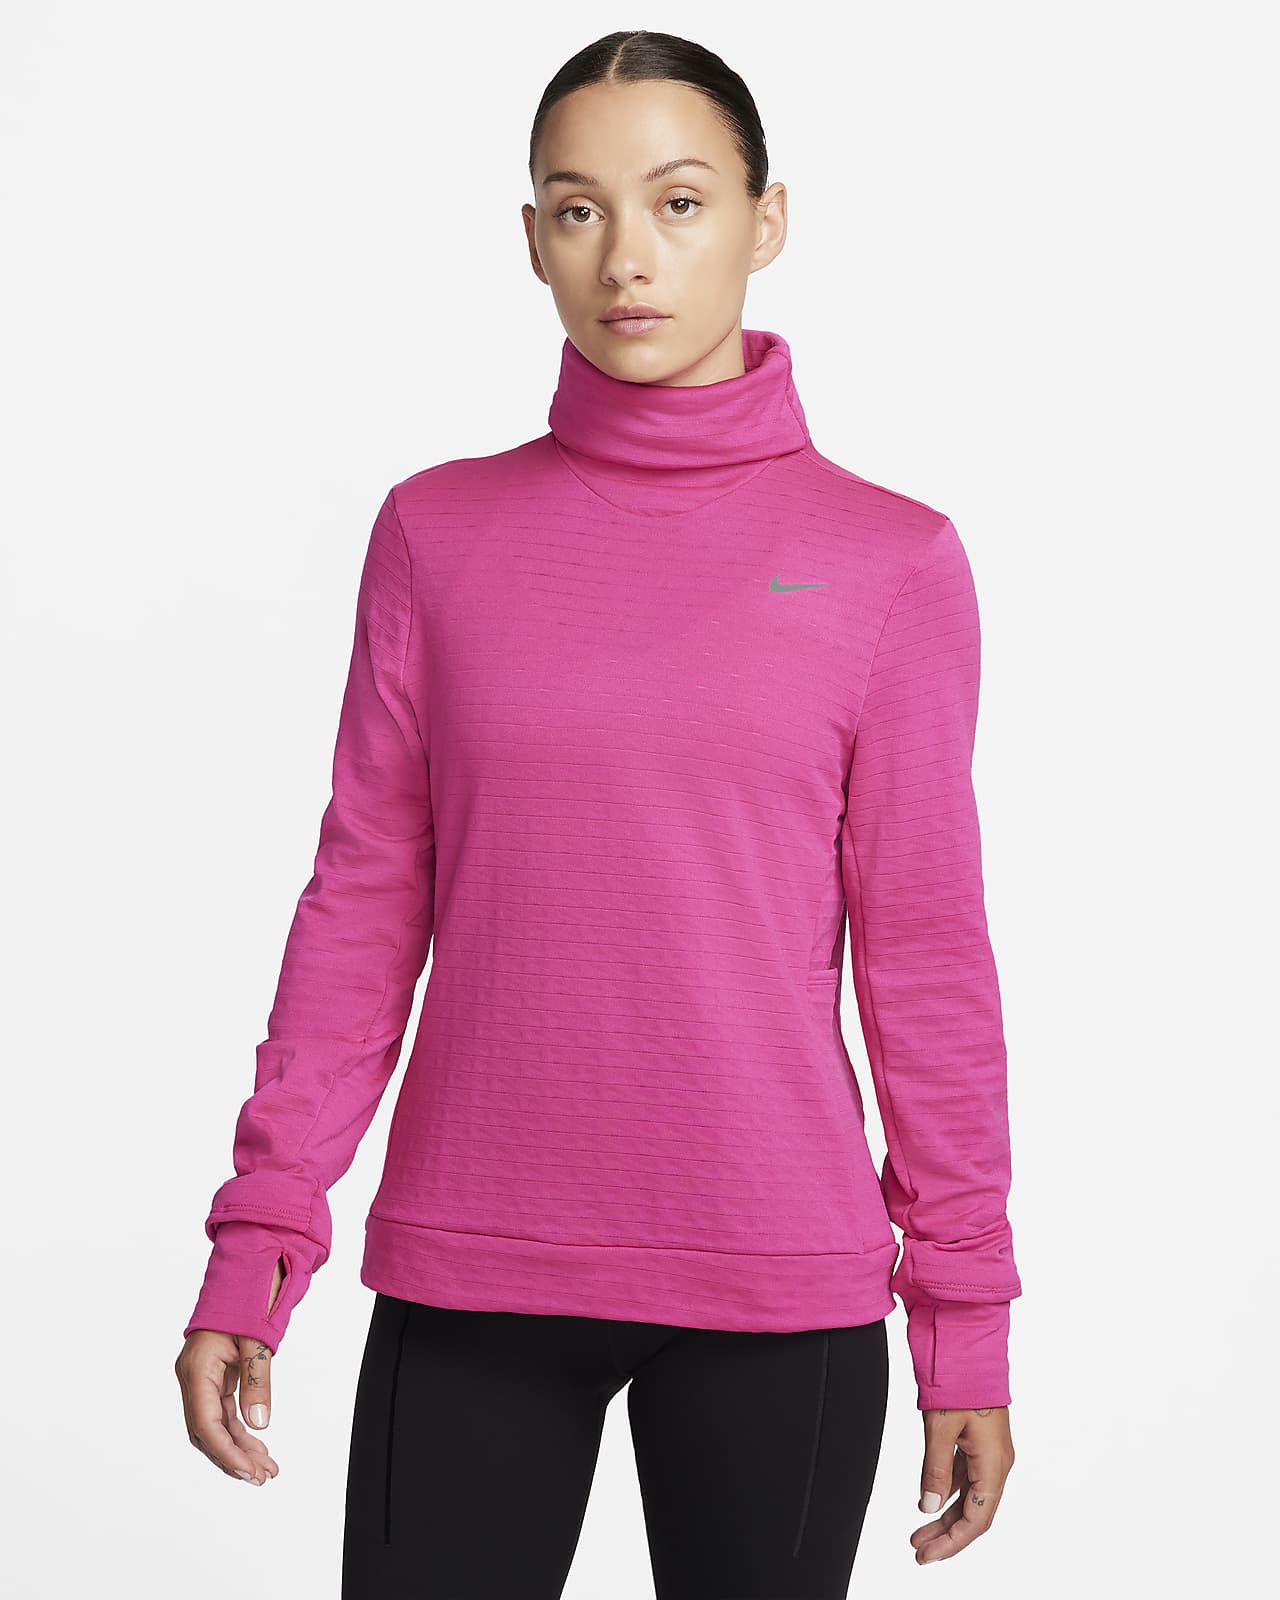 Nike Therma-FIT Swift női garbónyakú futófelső